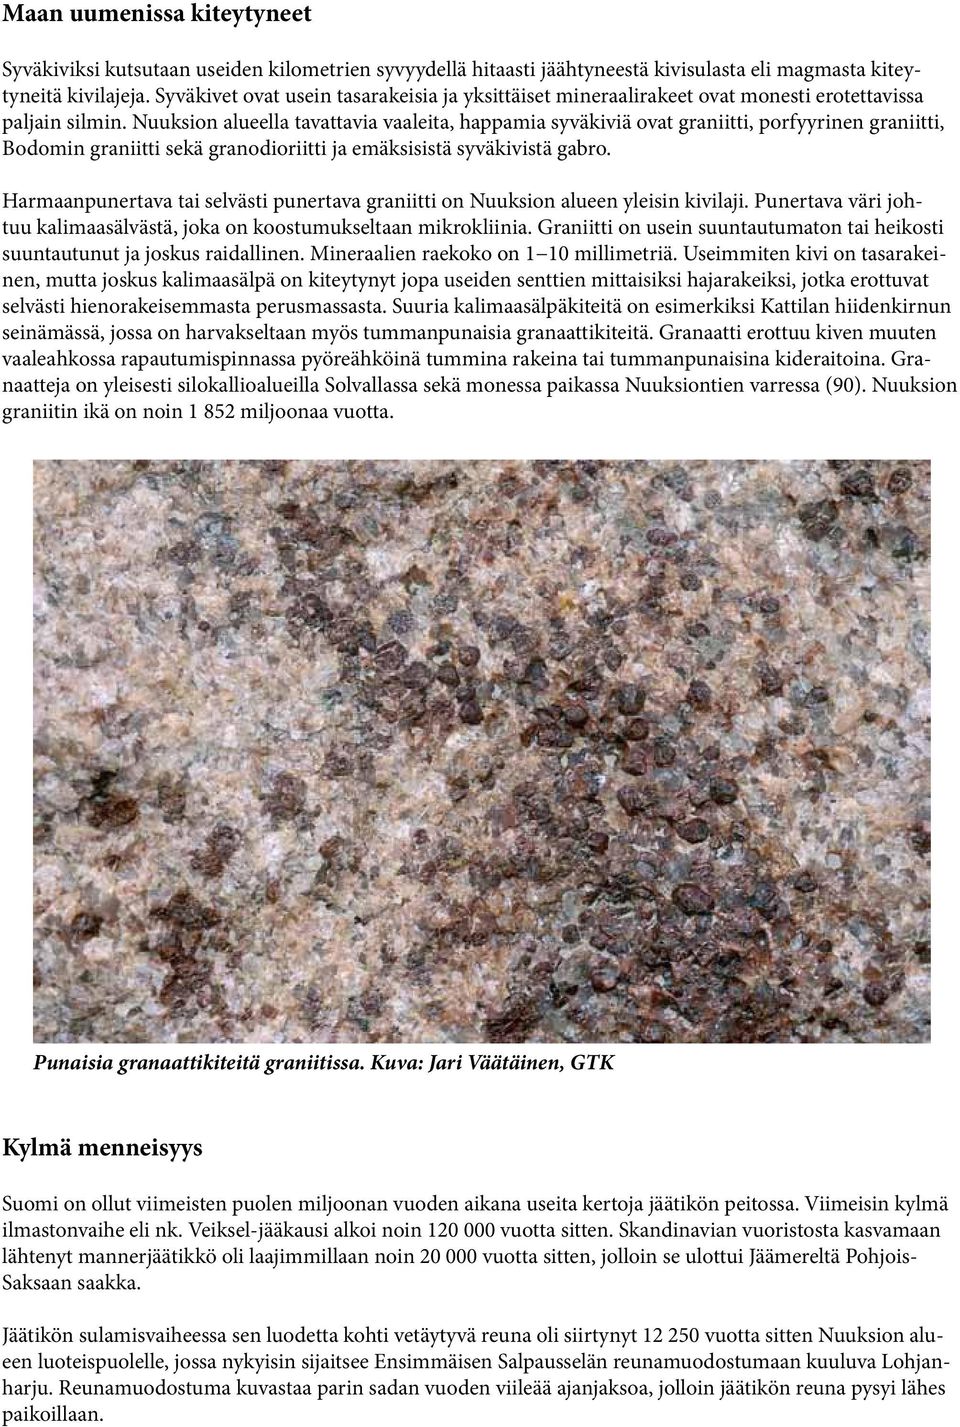 Nuuksion alueella tavattavia vaaleita, happamia syväkiviä ovat graniitti, porfyyrinen graniitti, Bodomin graniitti sekä granodioriitti ja emäksisistä syväkivistä gabro.